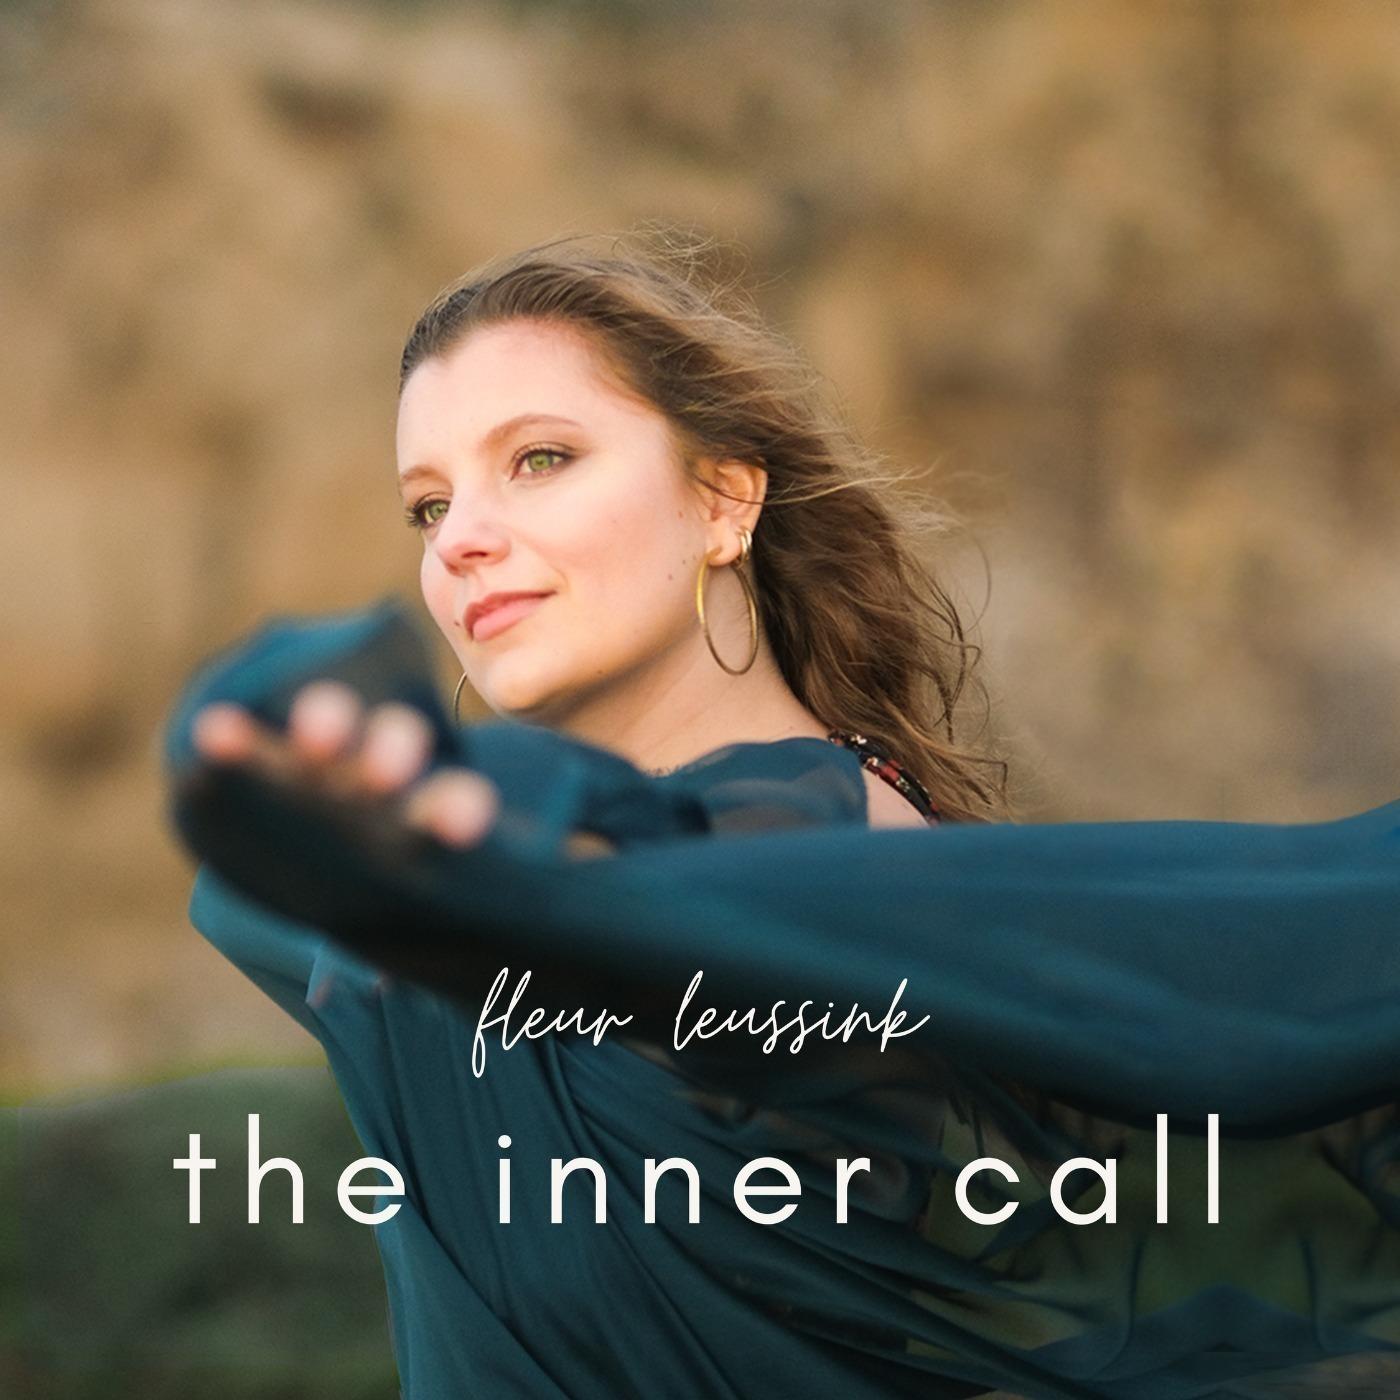 The Inner Call